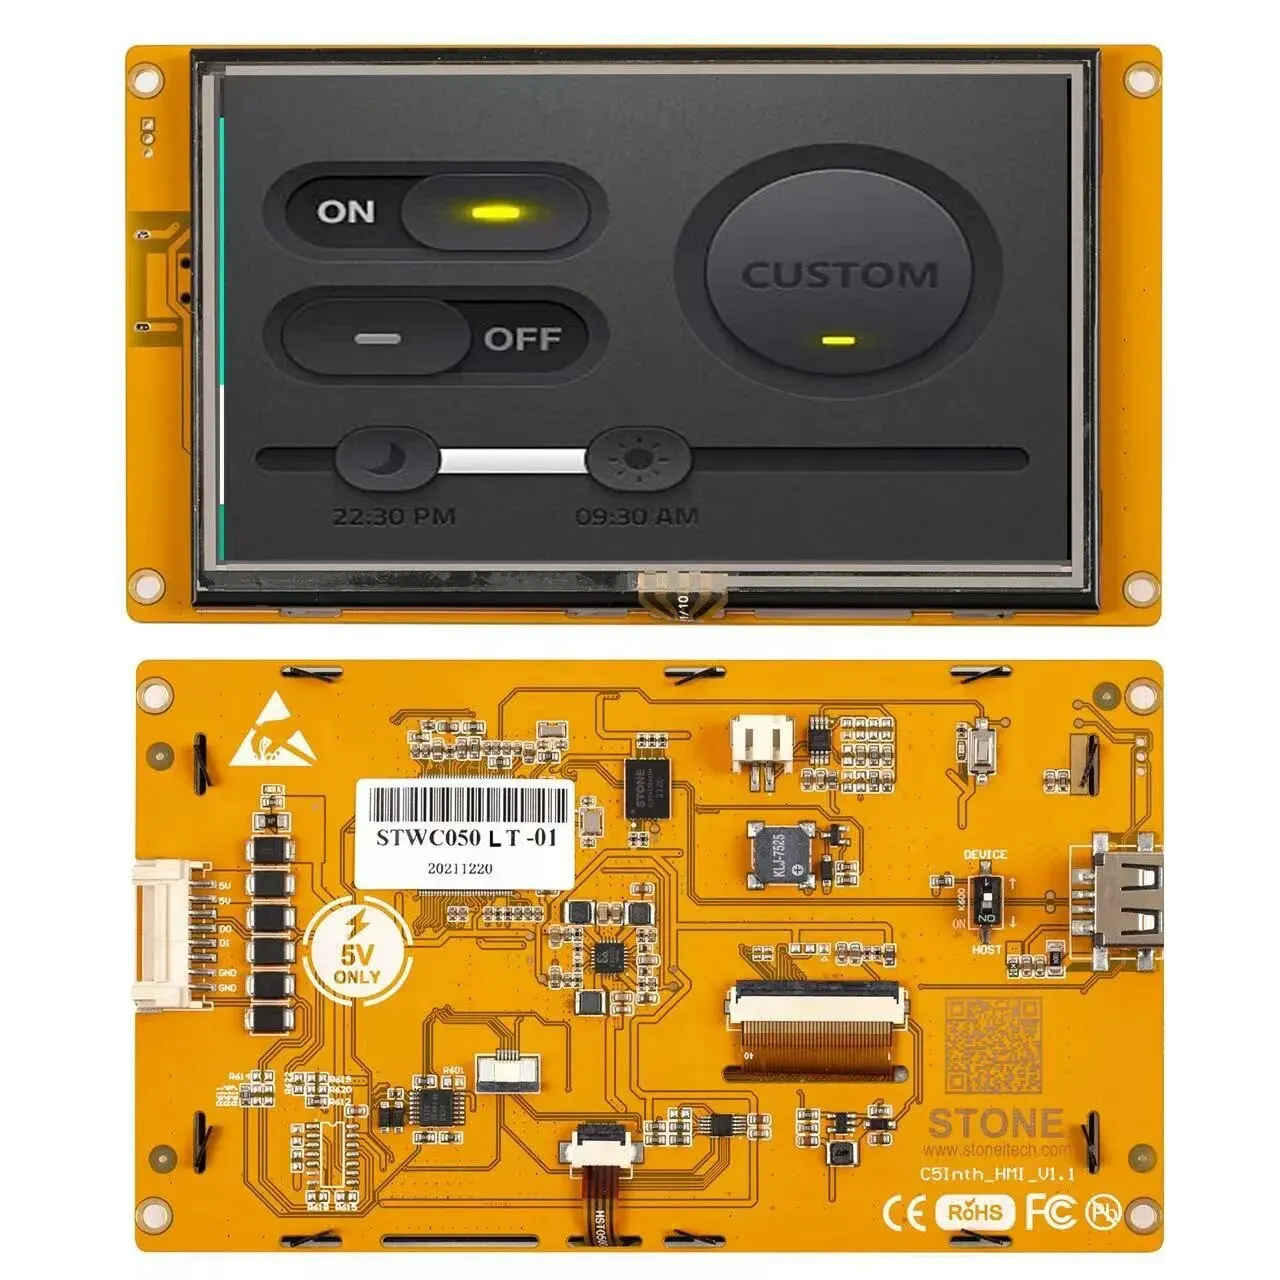 

5-дюймовый ЖК-дисплей TFT дисплей HMI, интеллектуальная серия RGB 262K, цветная резистивная сенсорная панель для управления промышленным оборудованием